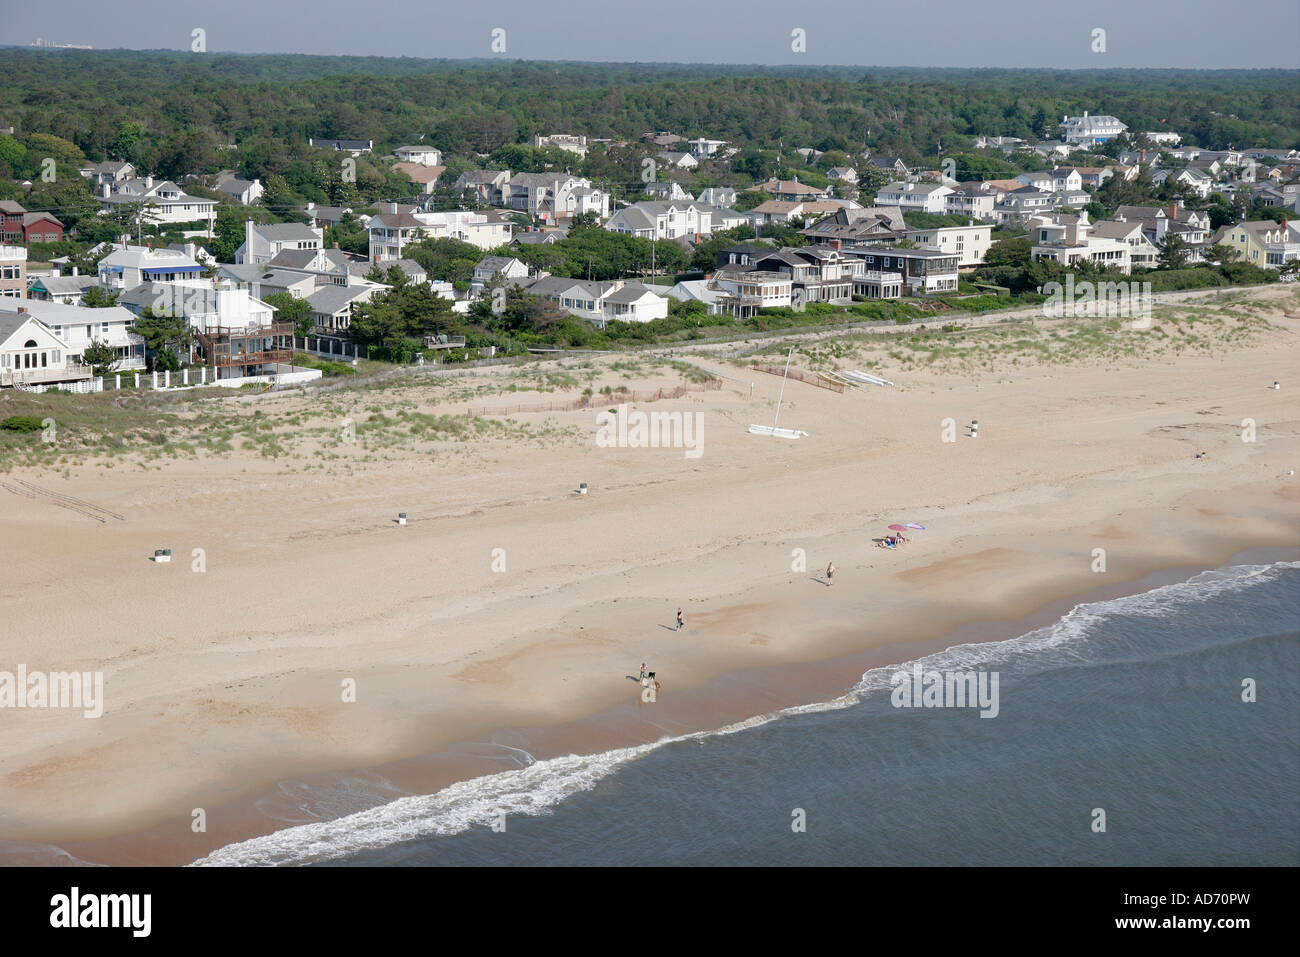 Virginia Beach, vue aérienne au-dessus, vue, océan Atlantique, rive de l'eau, North Beach, bord de mer, maisons, cottages, les visiteurs voyagent Banque D'Images